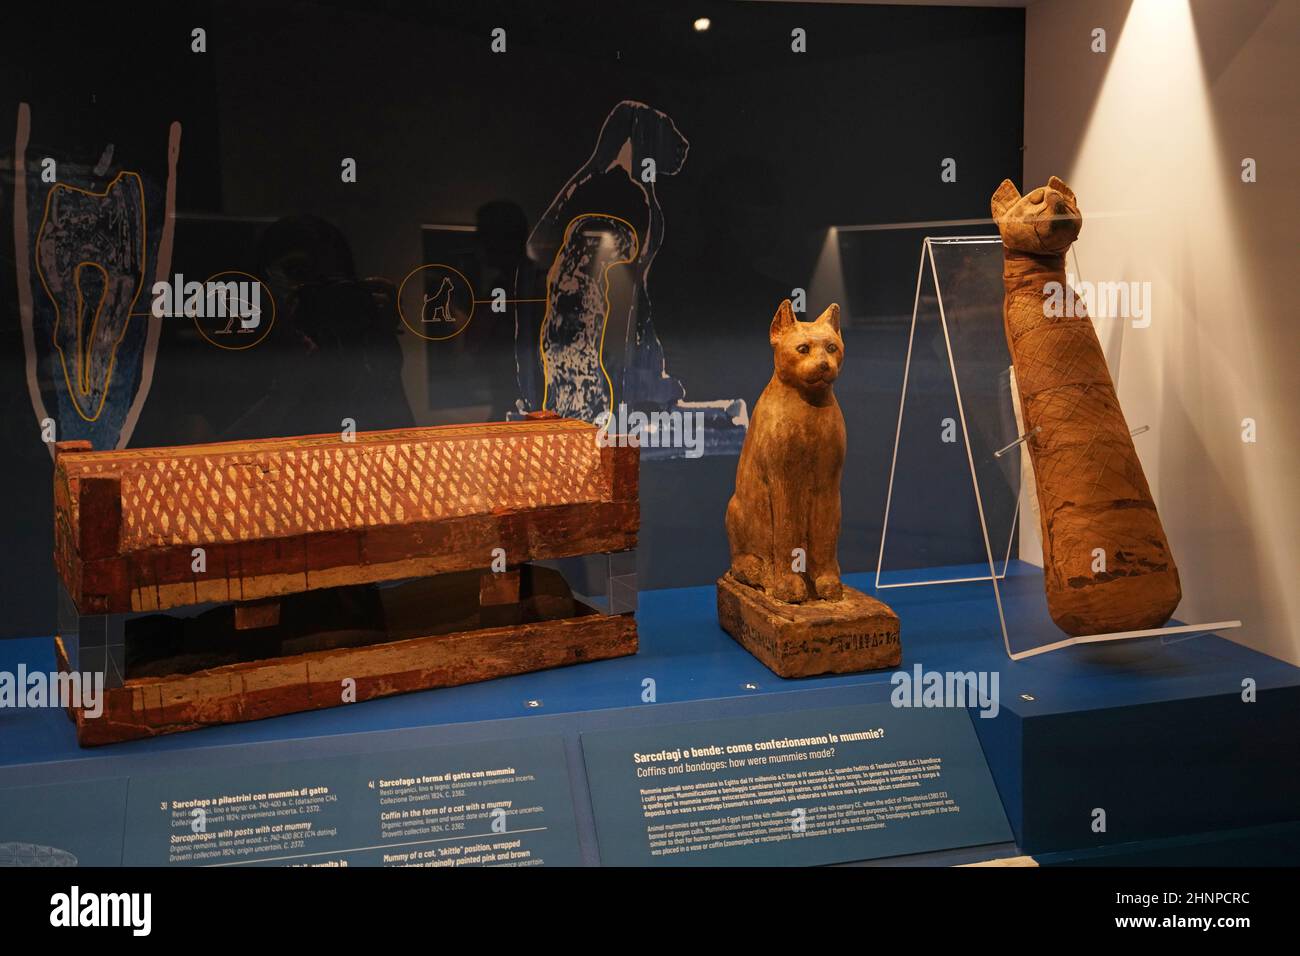 TURIN, ITALIE - 19 AOÛT 2021 : momie de chat.Momification du chat pendant la civilisation égyptienne, Musée égyptien de Turin, Italie Banque D'Images